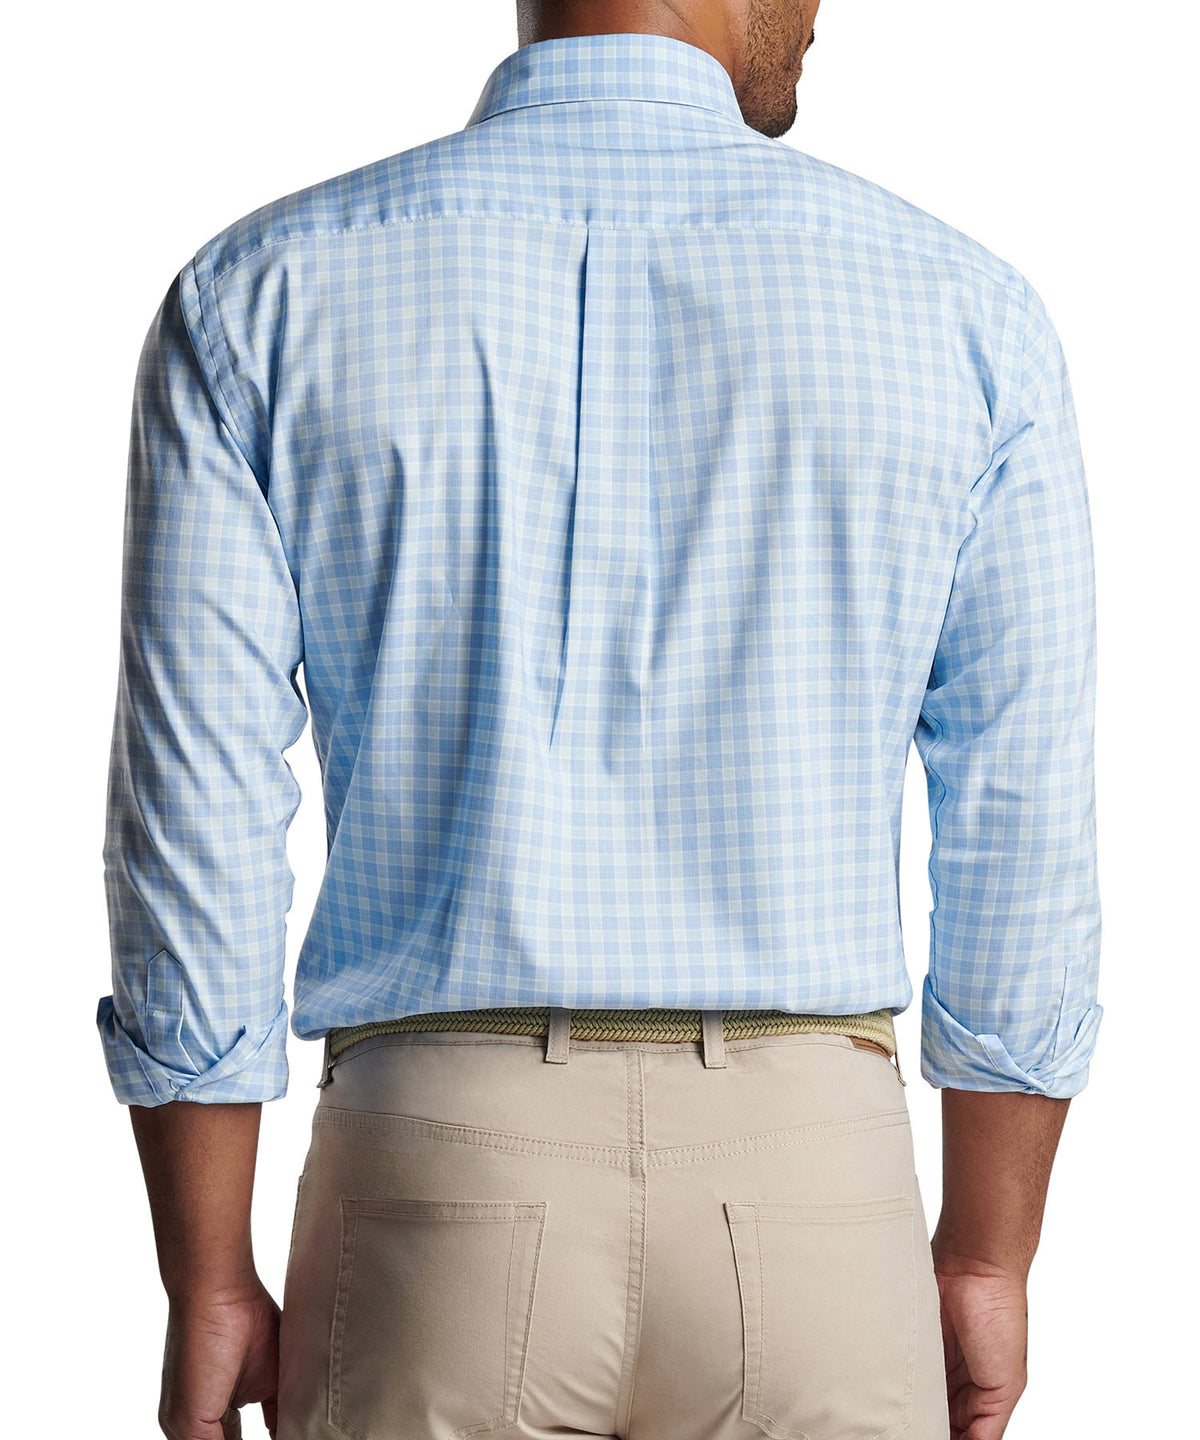 Peter Millar Long Sleeve Bethel Button-Down Collar Patterned Sport Shirt, Big & Tall